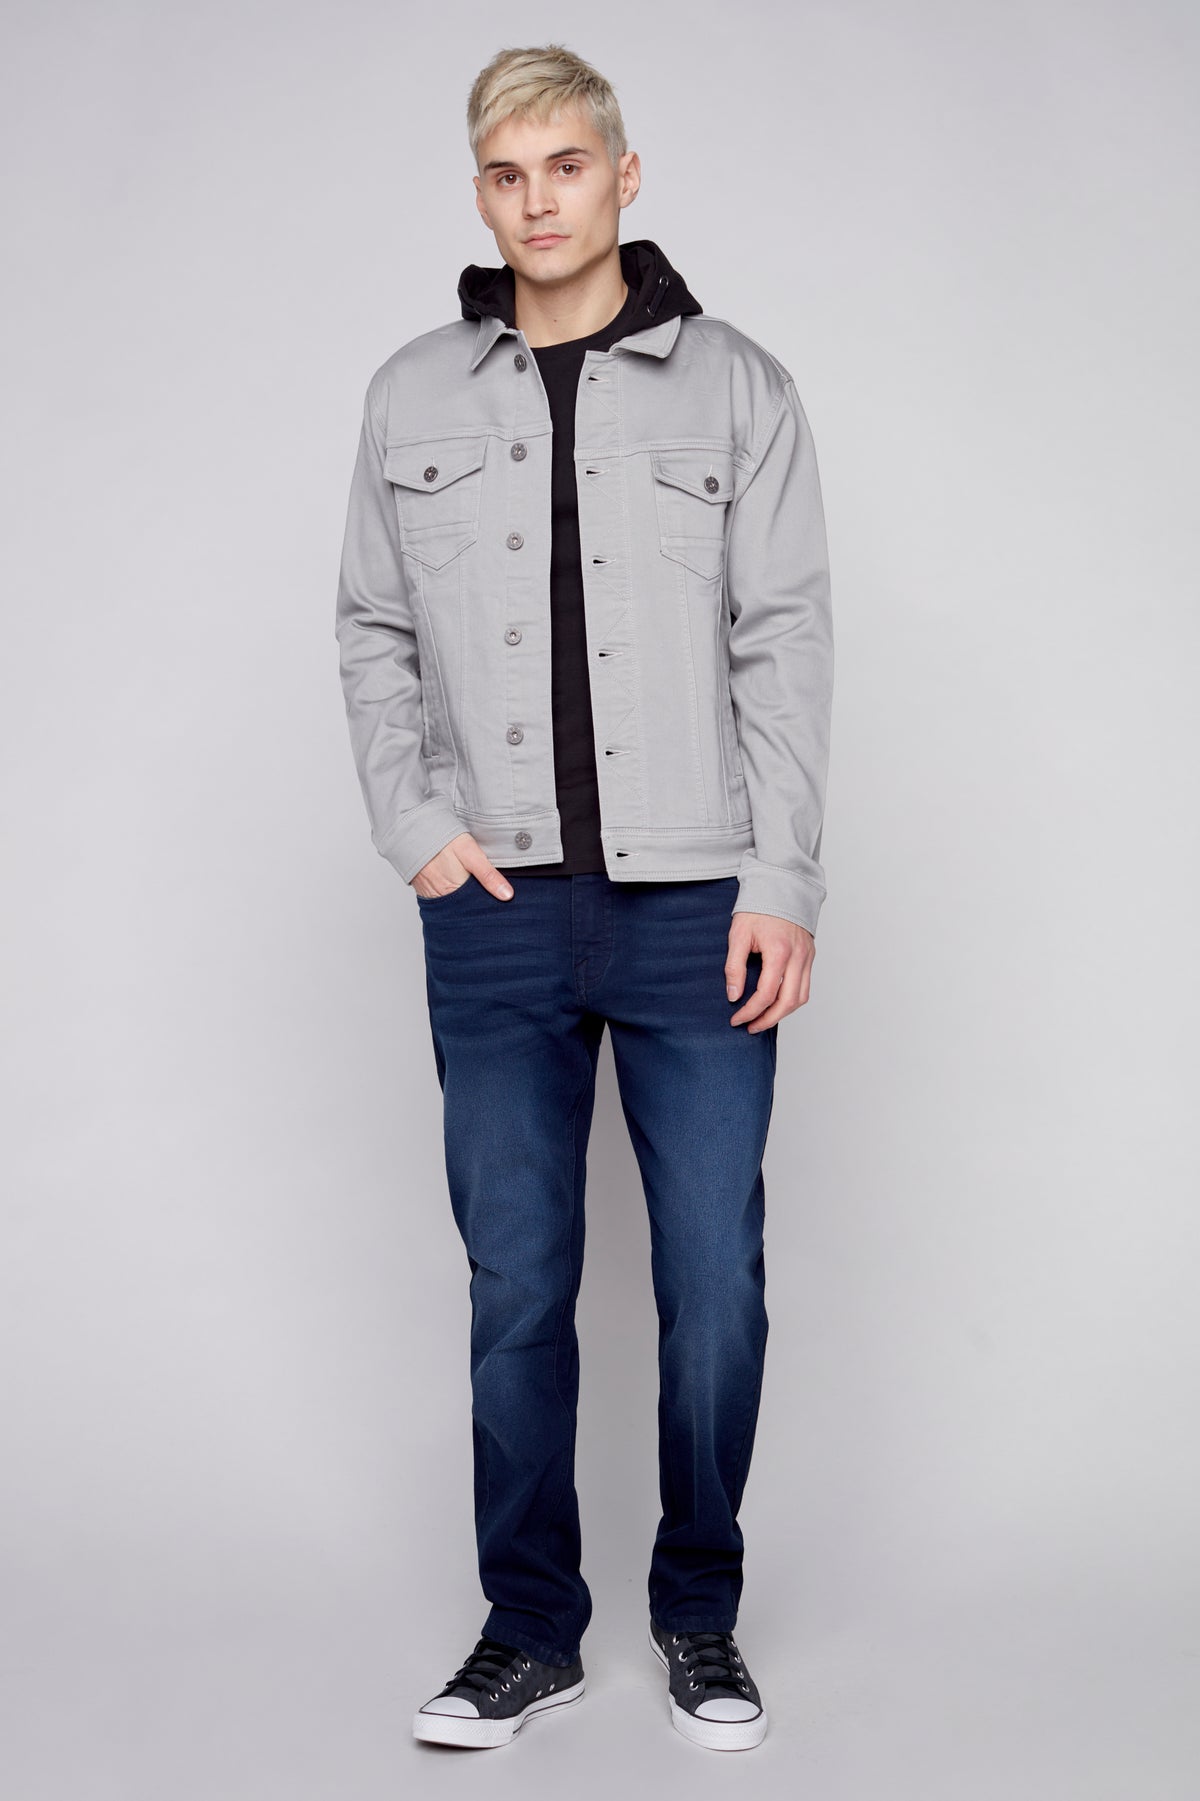 Men's Denim Jacket With Built-In Hood - Light Grey